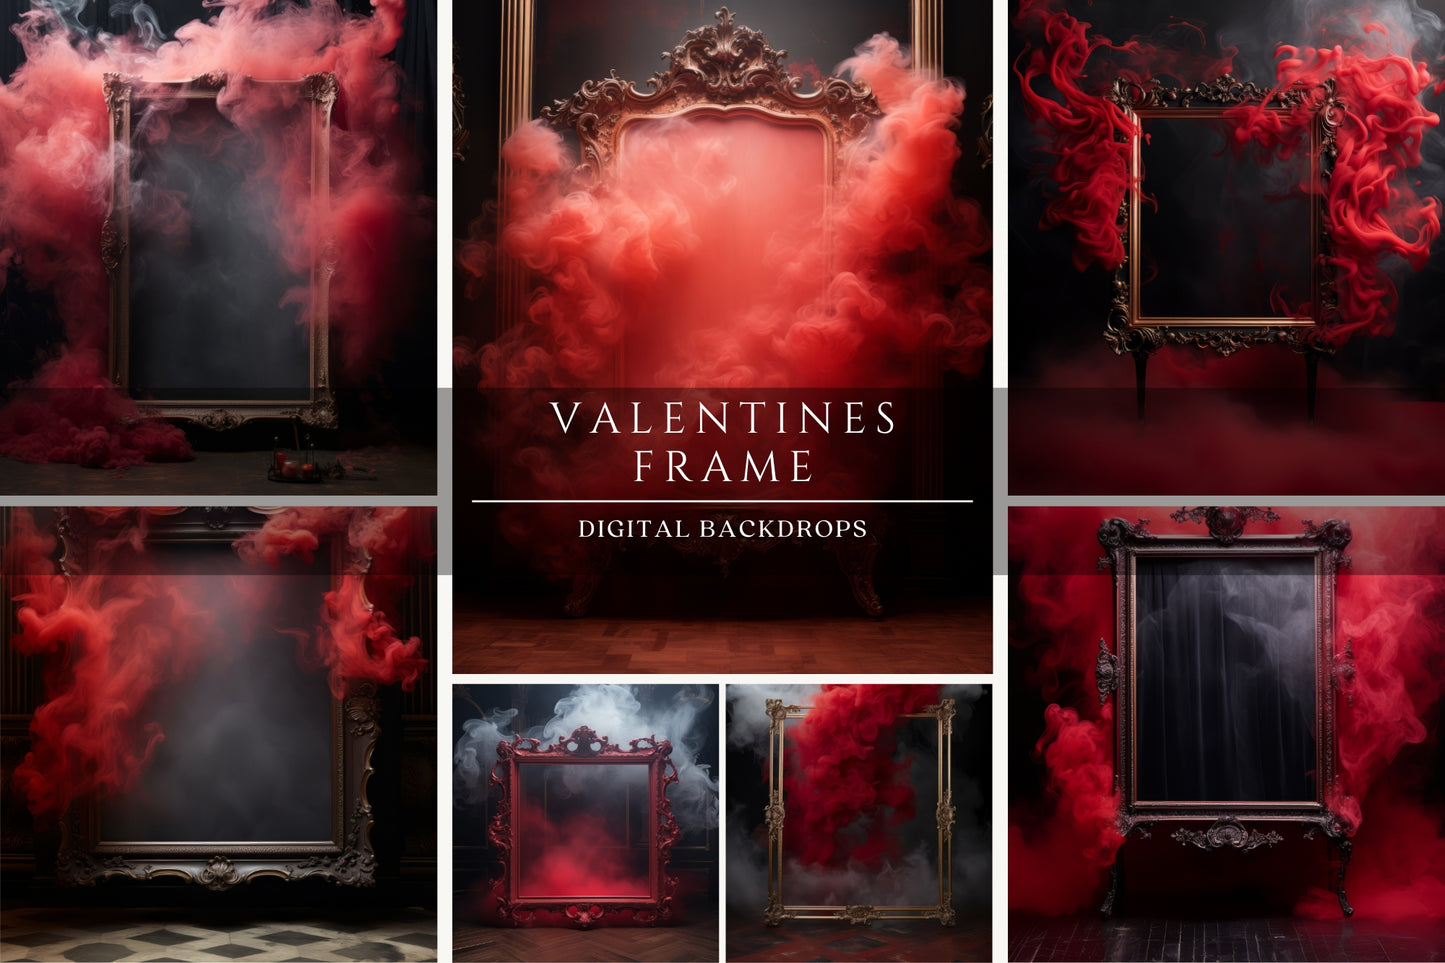 Valentines Frame Digital Backdrops